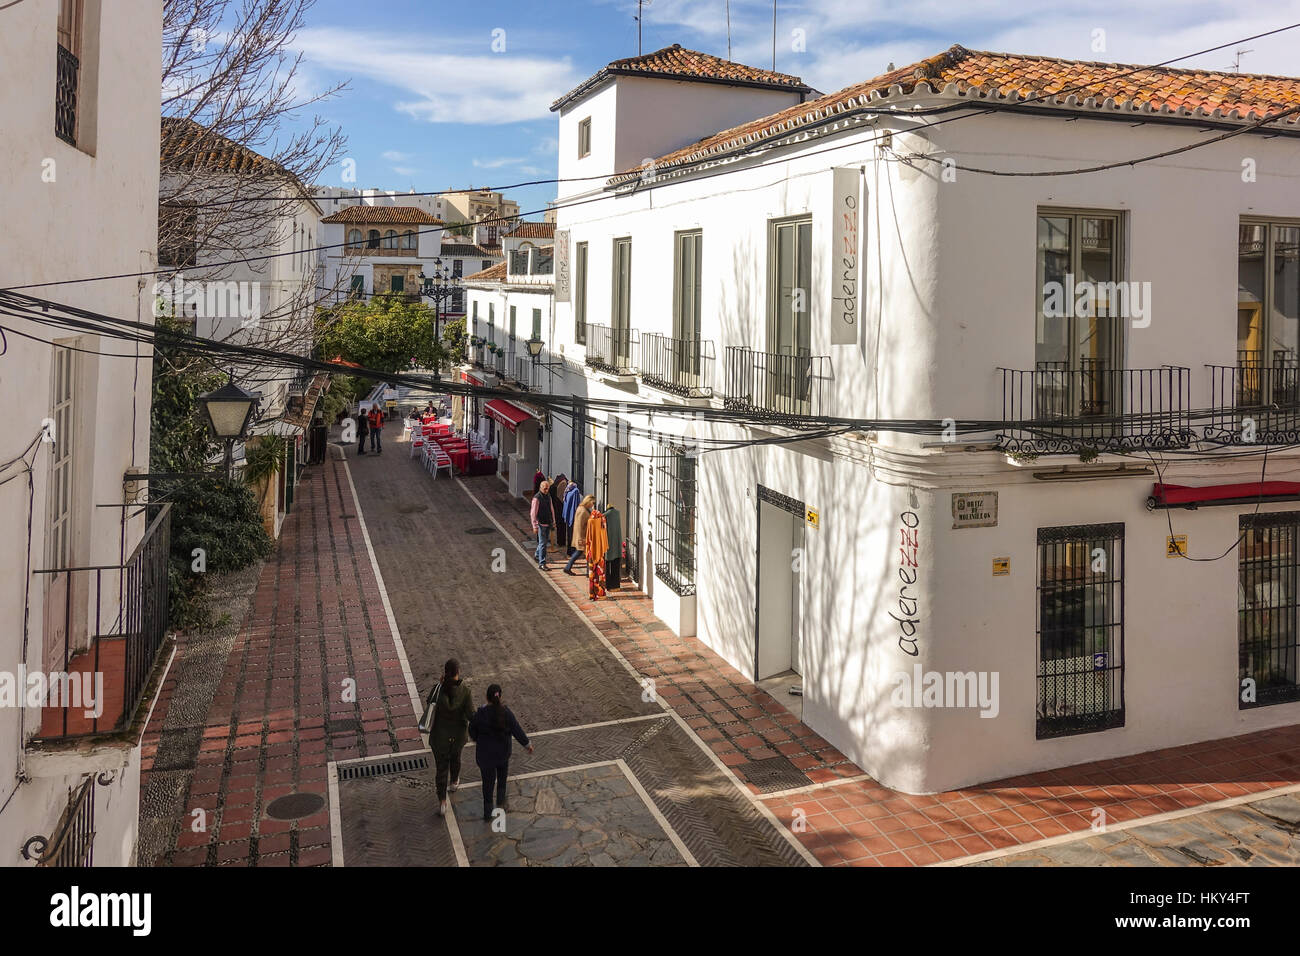 Street dans la vieille ville de Marbella, sur orange square, saison d'hiver. L'Andalousie, espagne. Banque D'Images